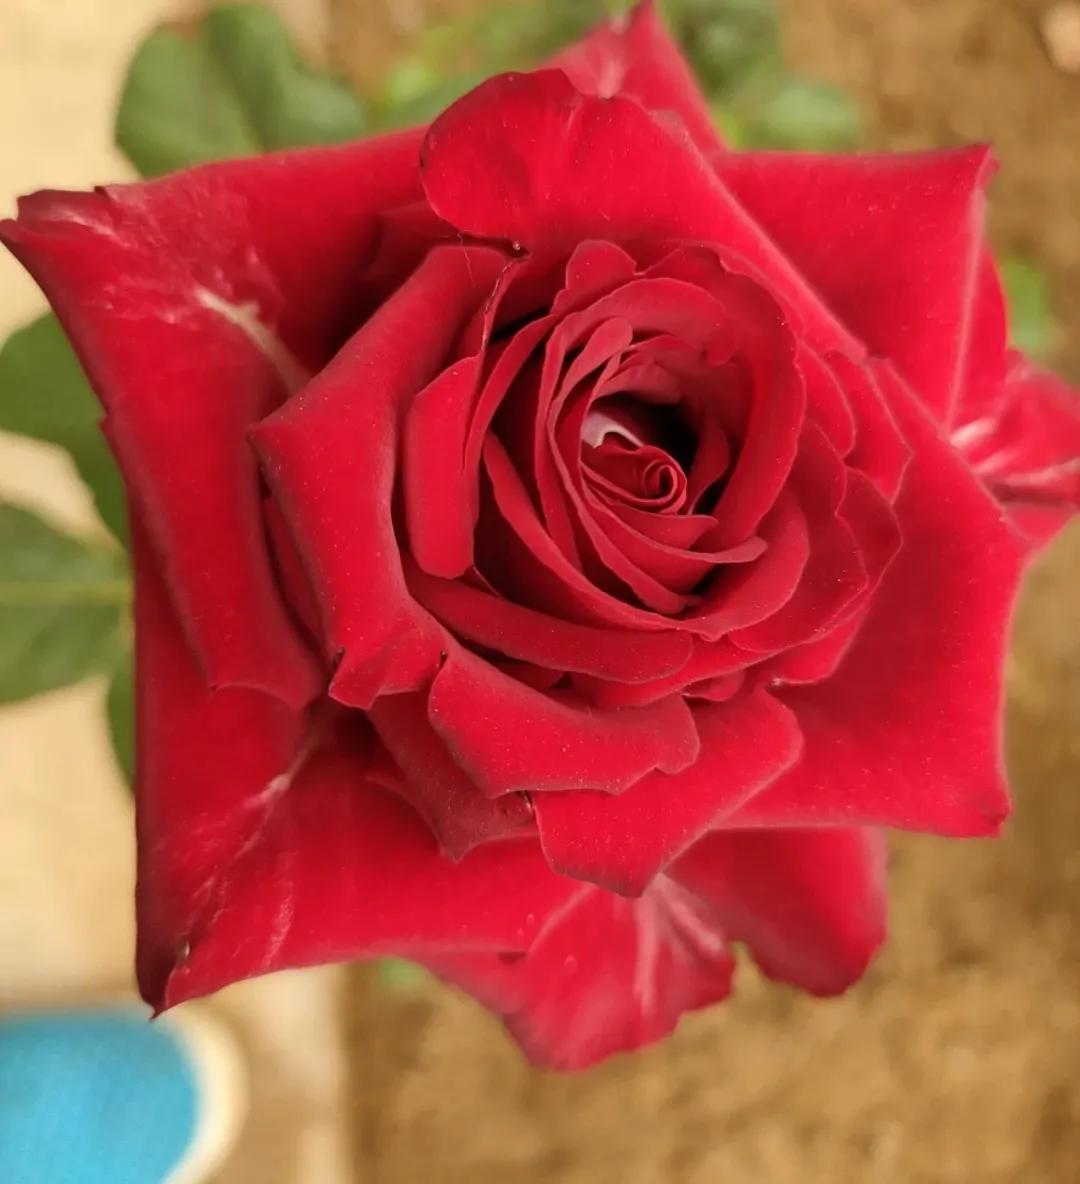 鲜花美图:娇艳欲滴的玫瑰花,美的令人窒息